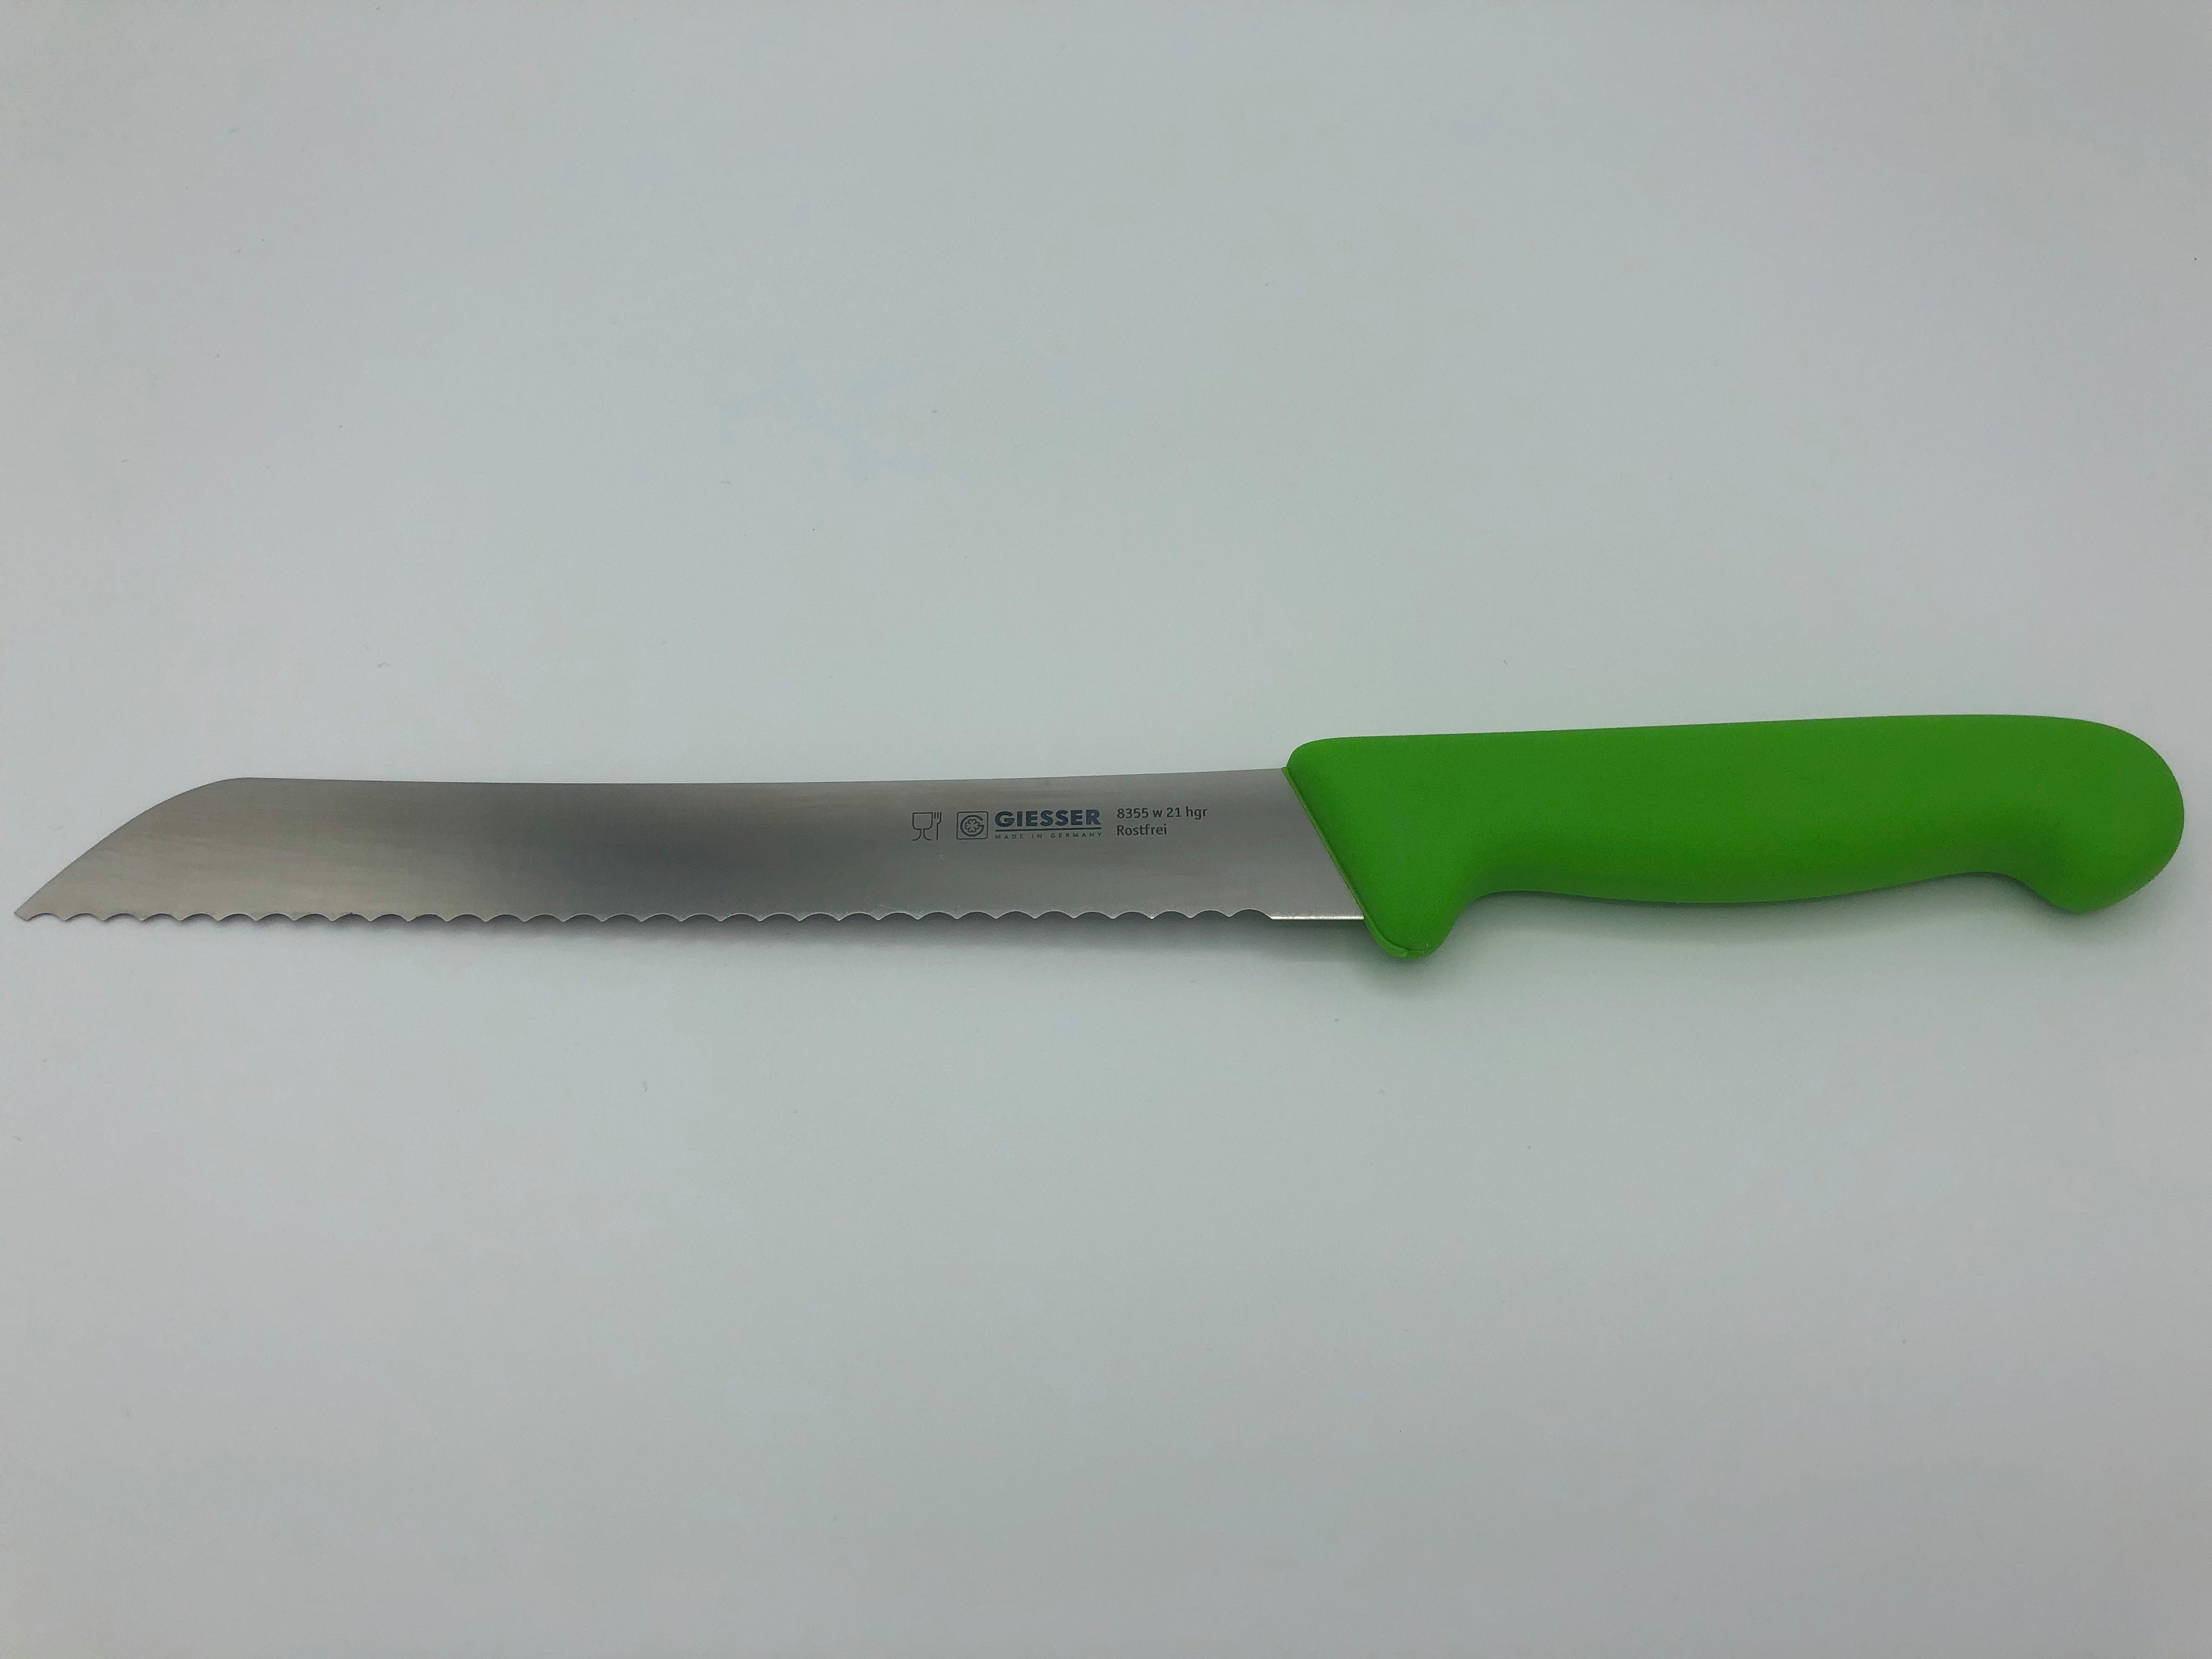 Giesser Messer Brotmesser Konditormesser 8355, Kunststoffgriff, 6 mm Welle, ideal zum Brot schneiden Hellgrün